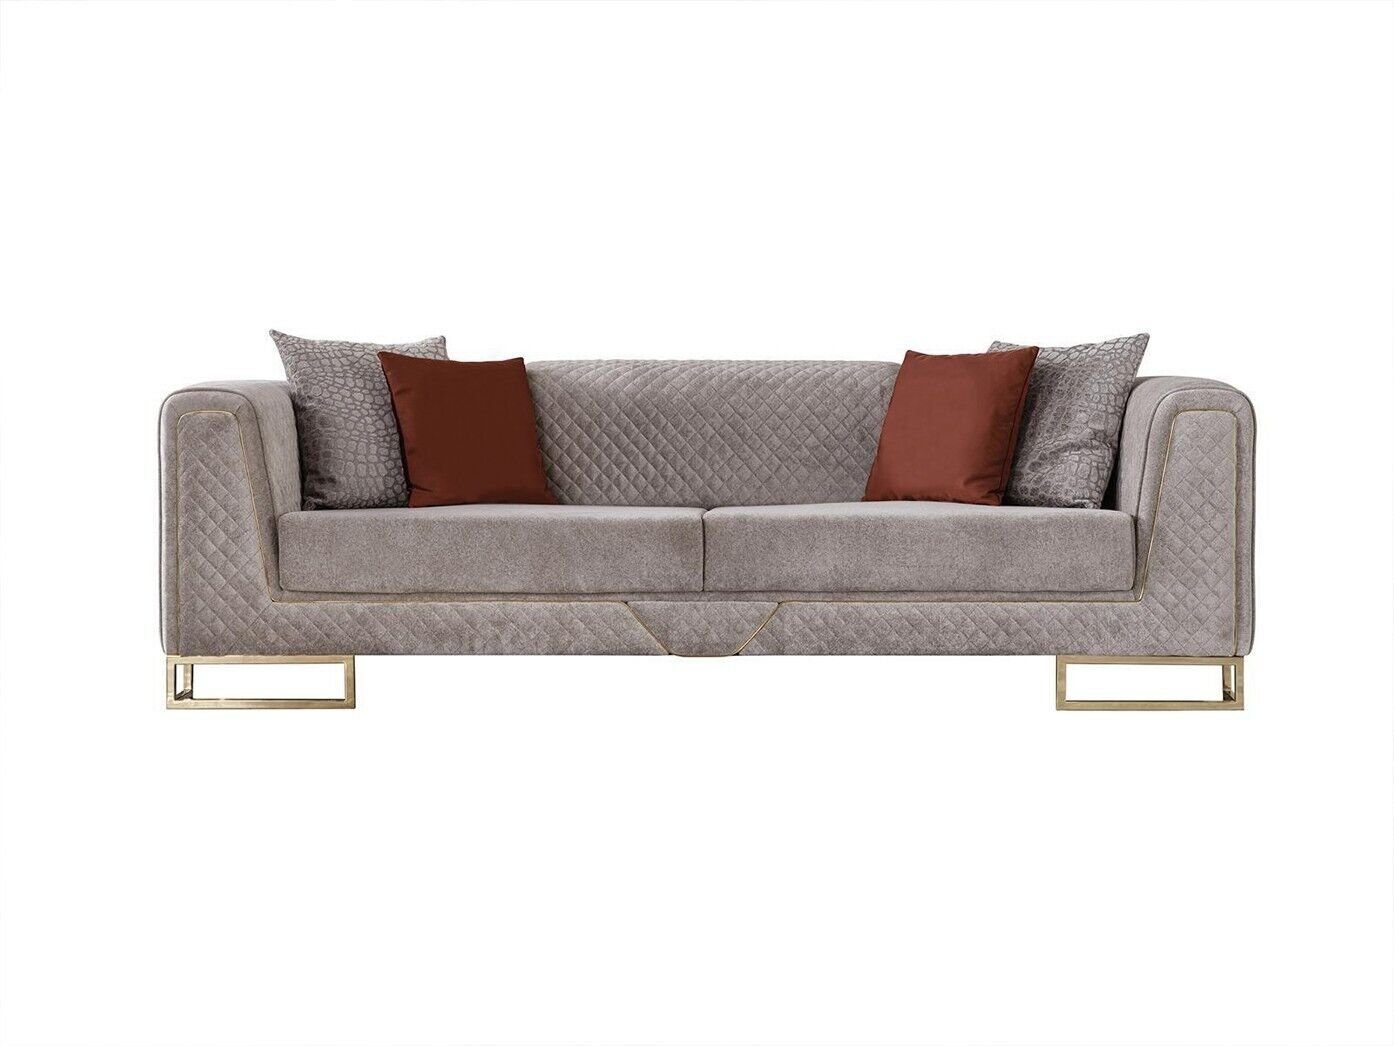 Couch Ecksofa in Europa Sofa Einrichtung Dreisitzer xxl Made Luxus Polster JVmoebel Möbel 240cm,